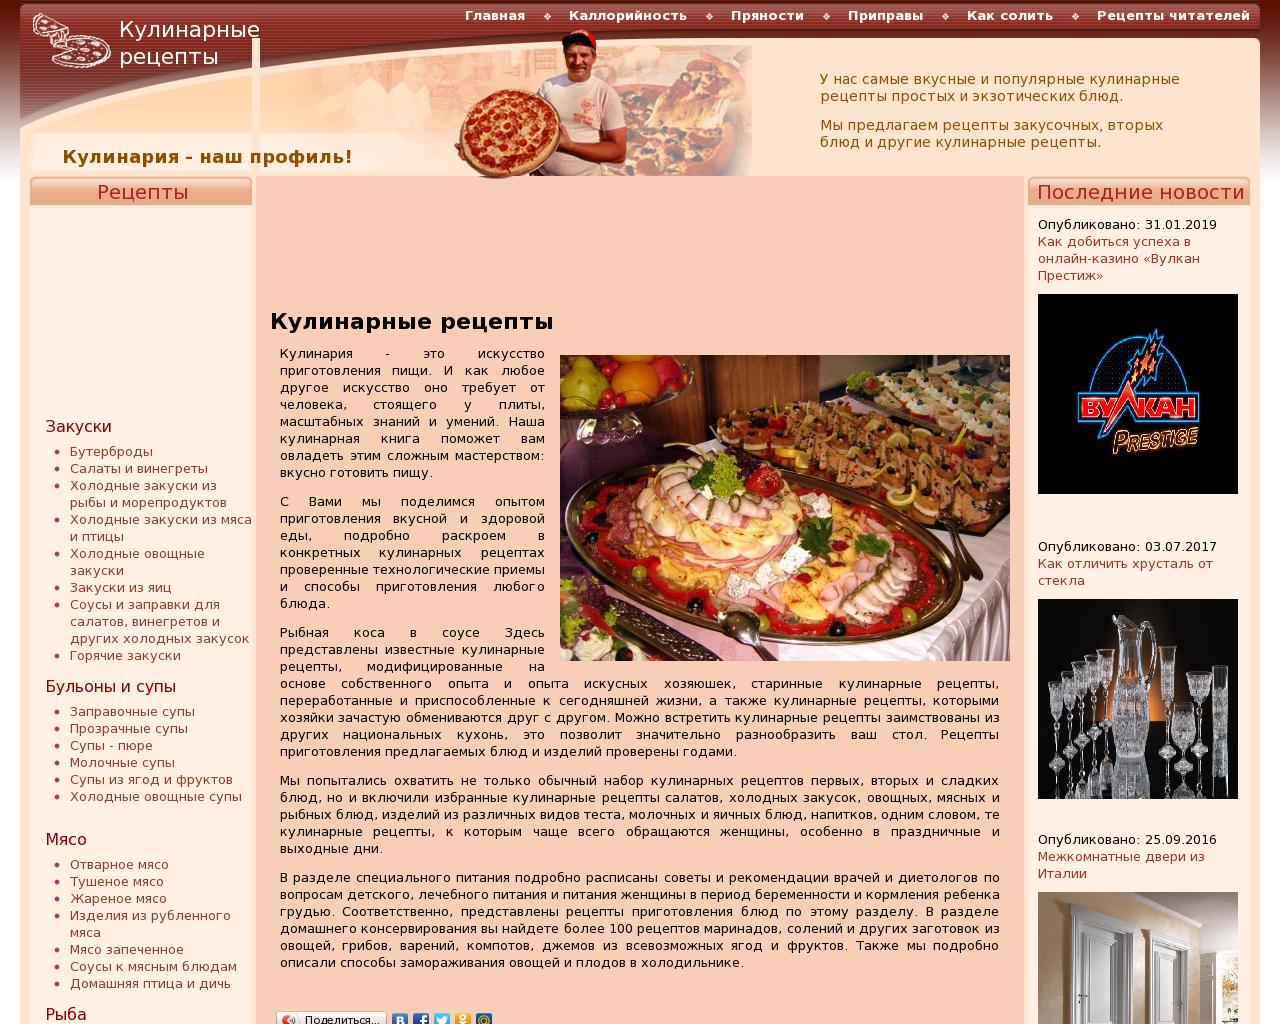 Изображение сайта eda76.ru в разрешении 1280x1024